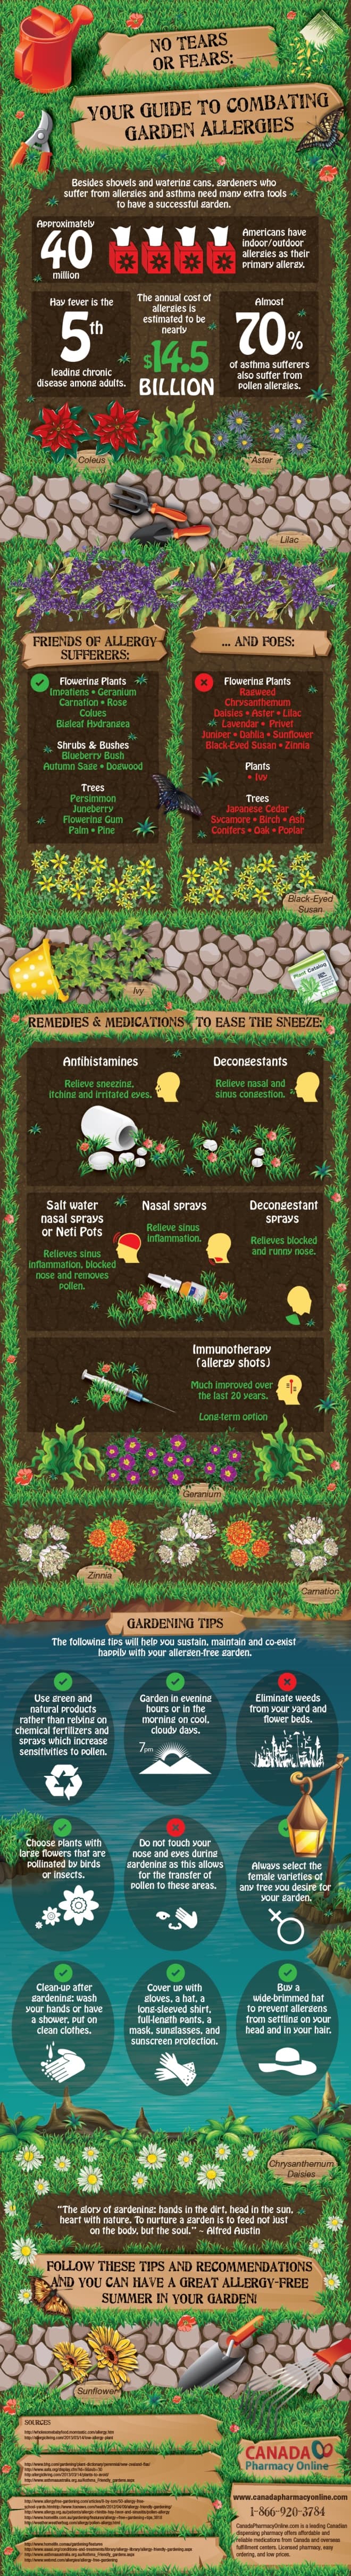 Combating Garden Allergies